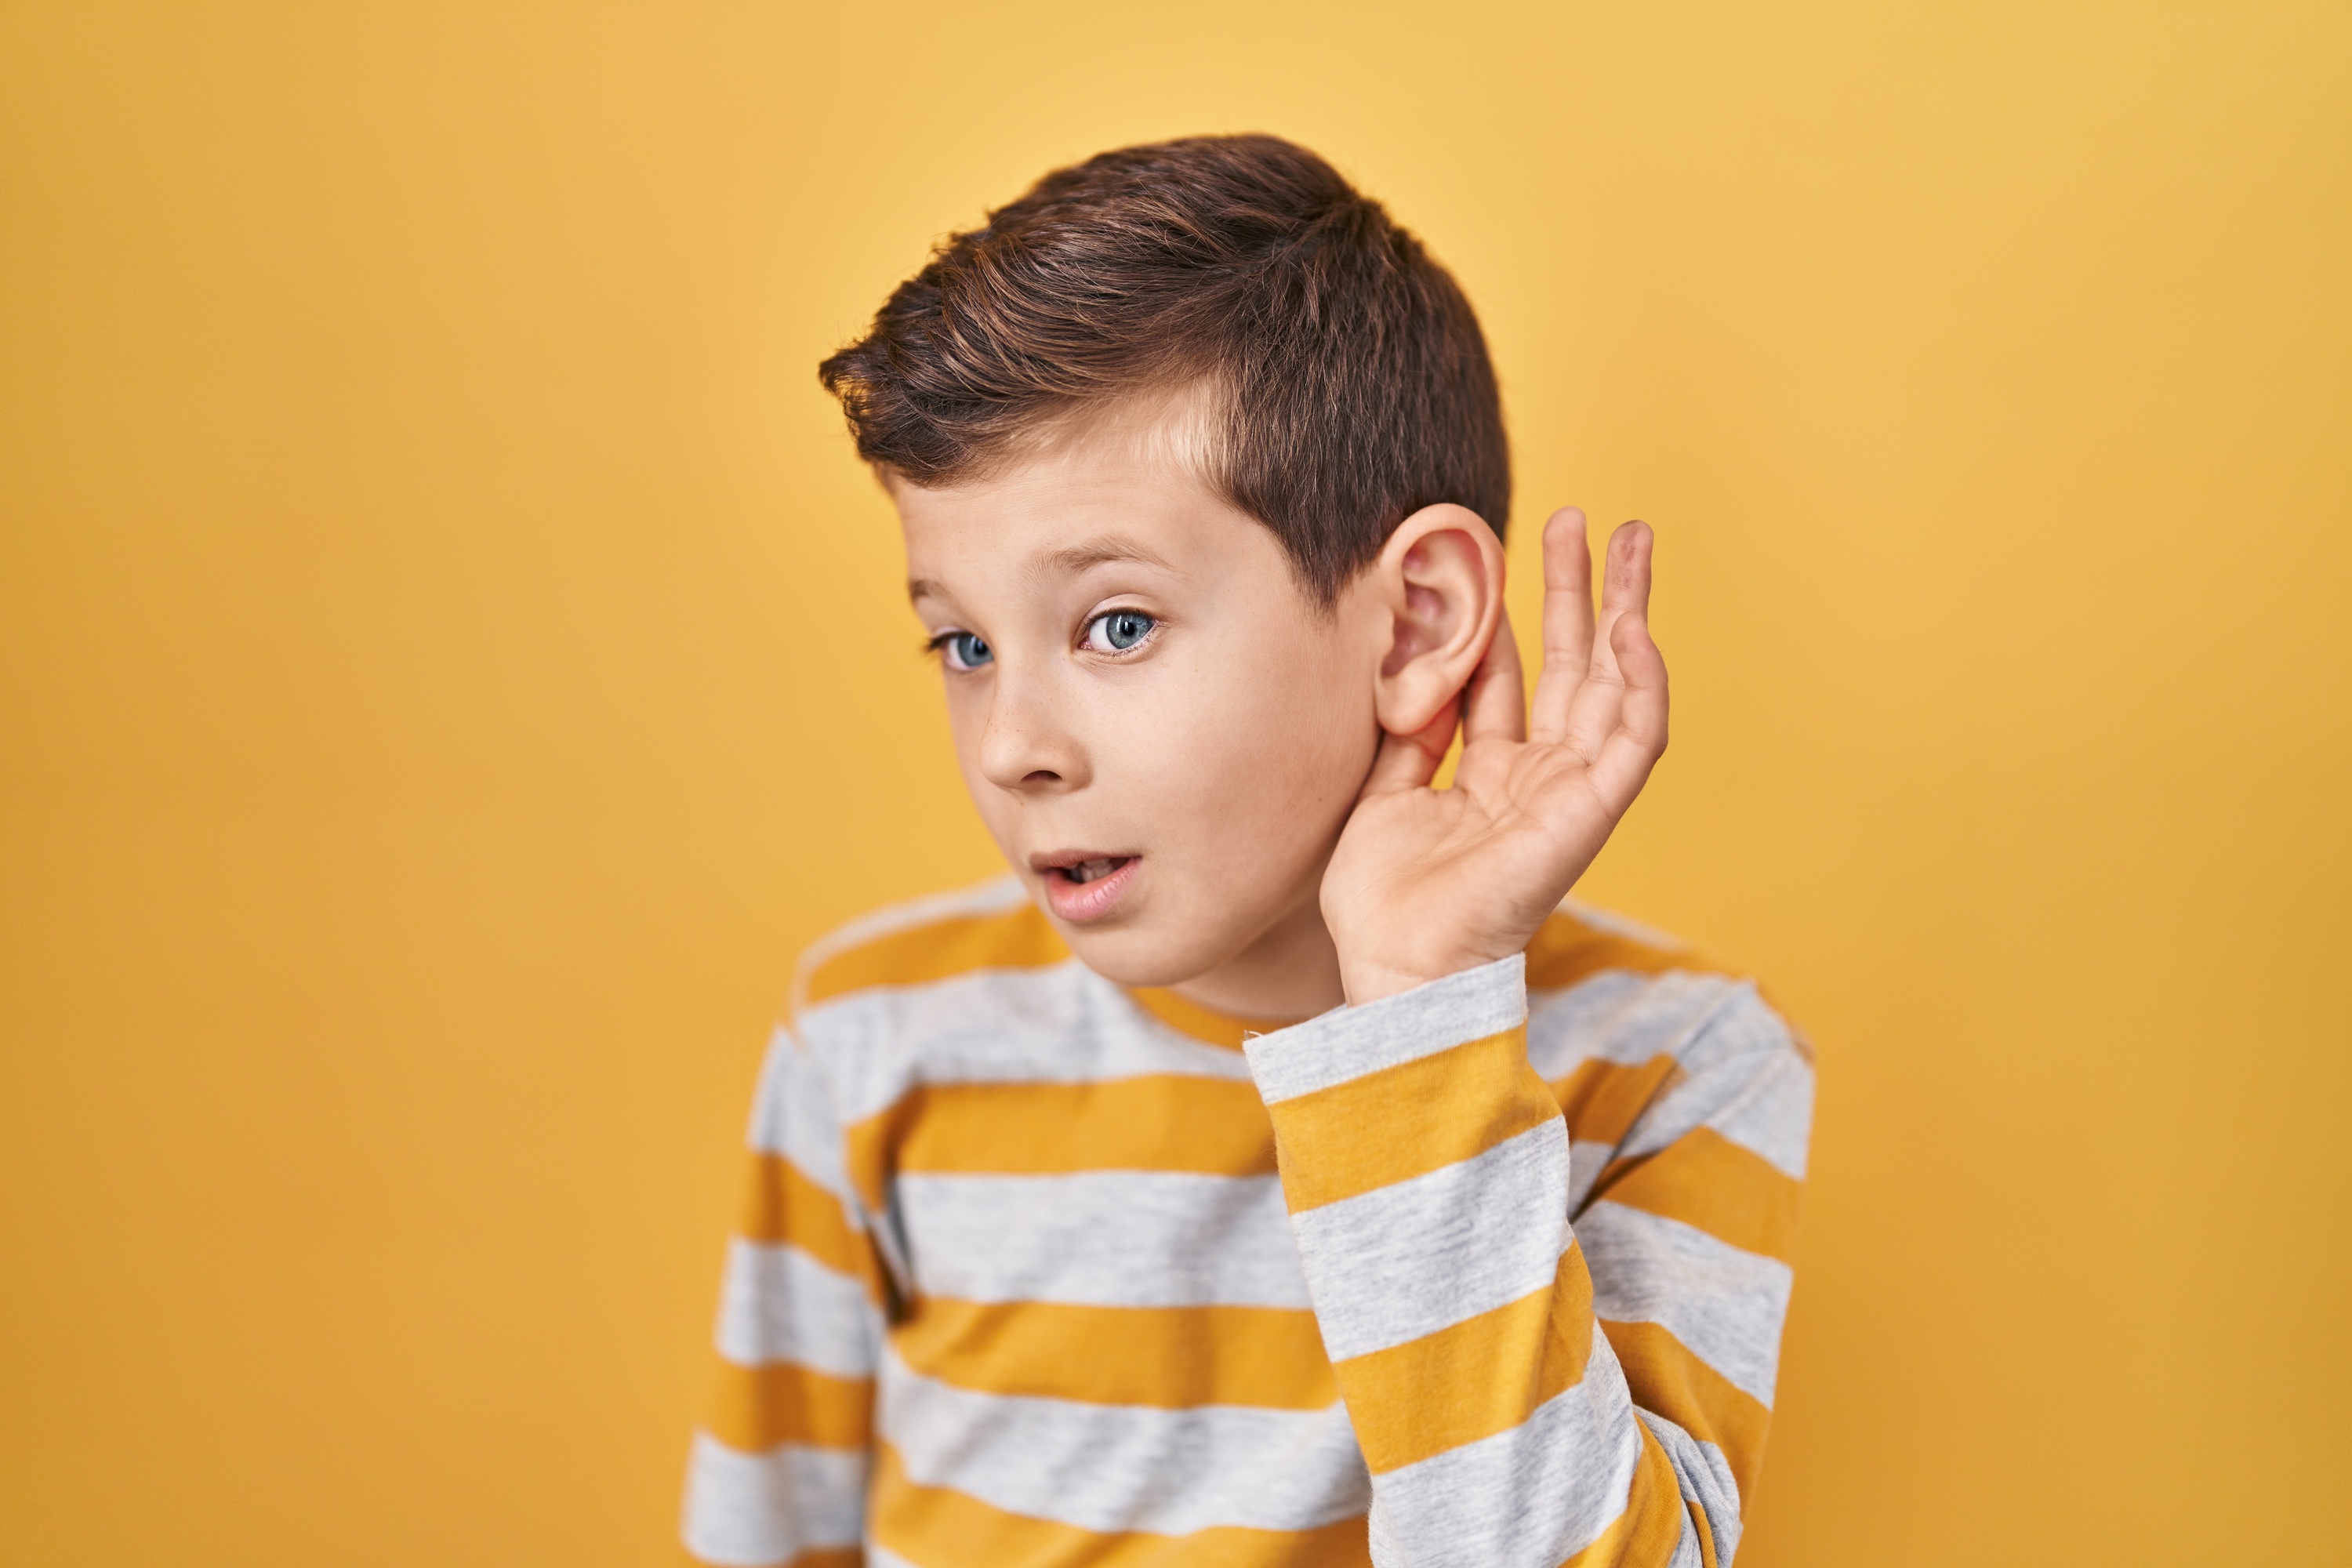 Environ 150 gènes sont responsables de la perte auditive chez l'enfant. © Krakenimages.com, Adobe Stock